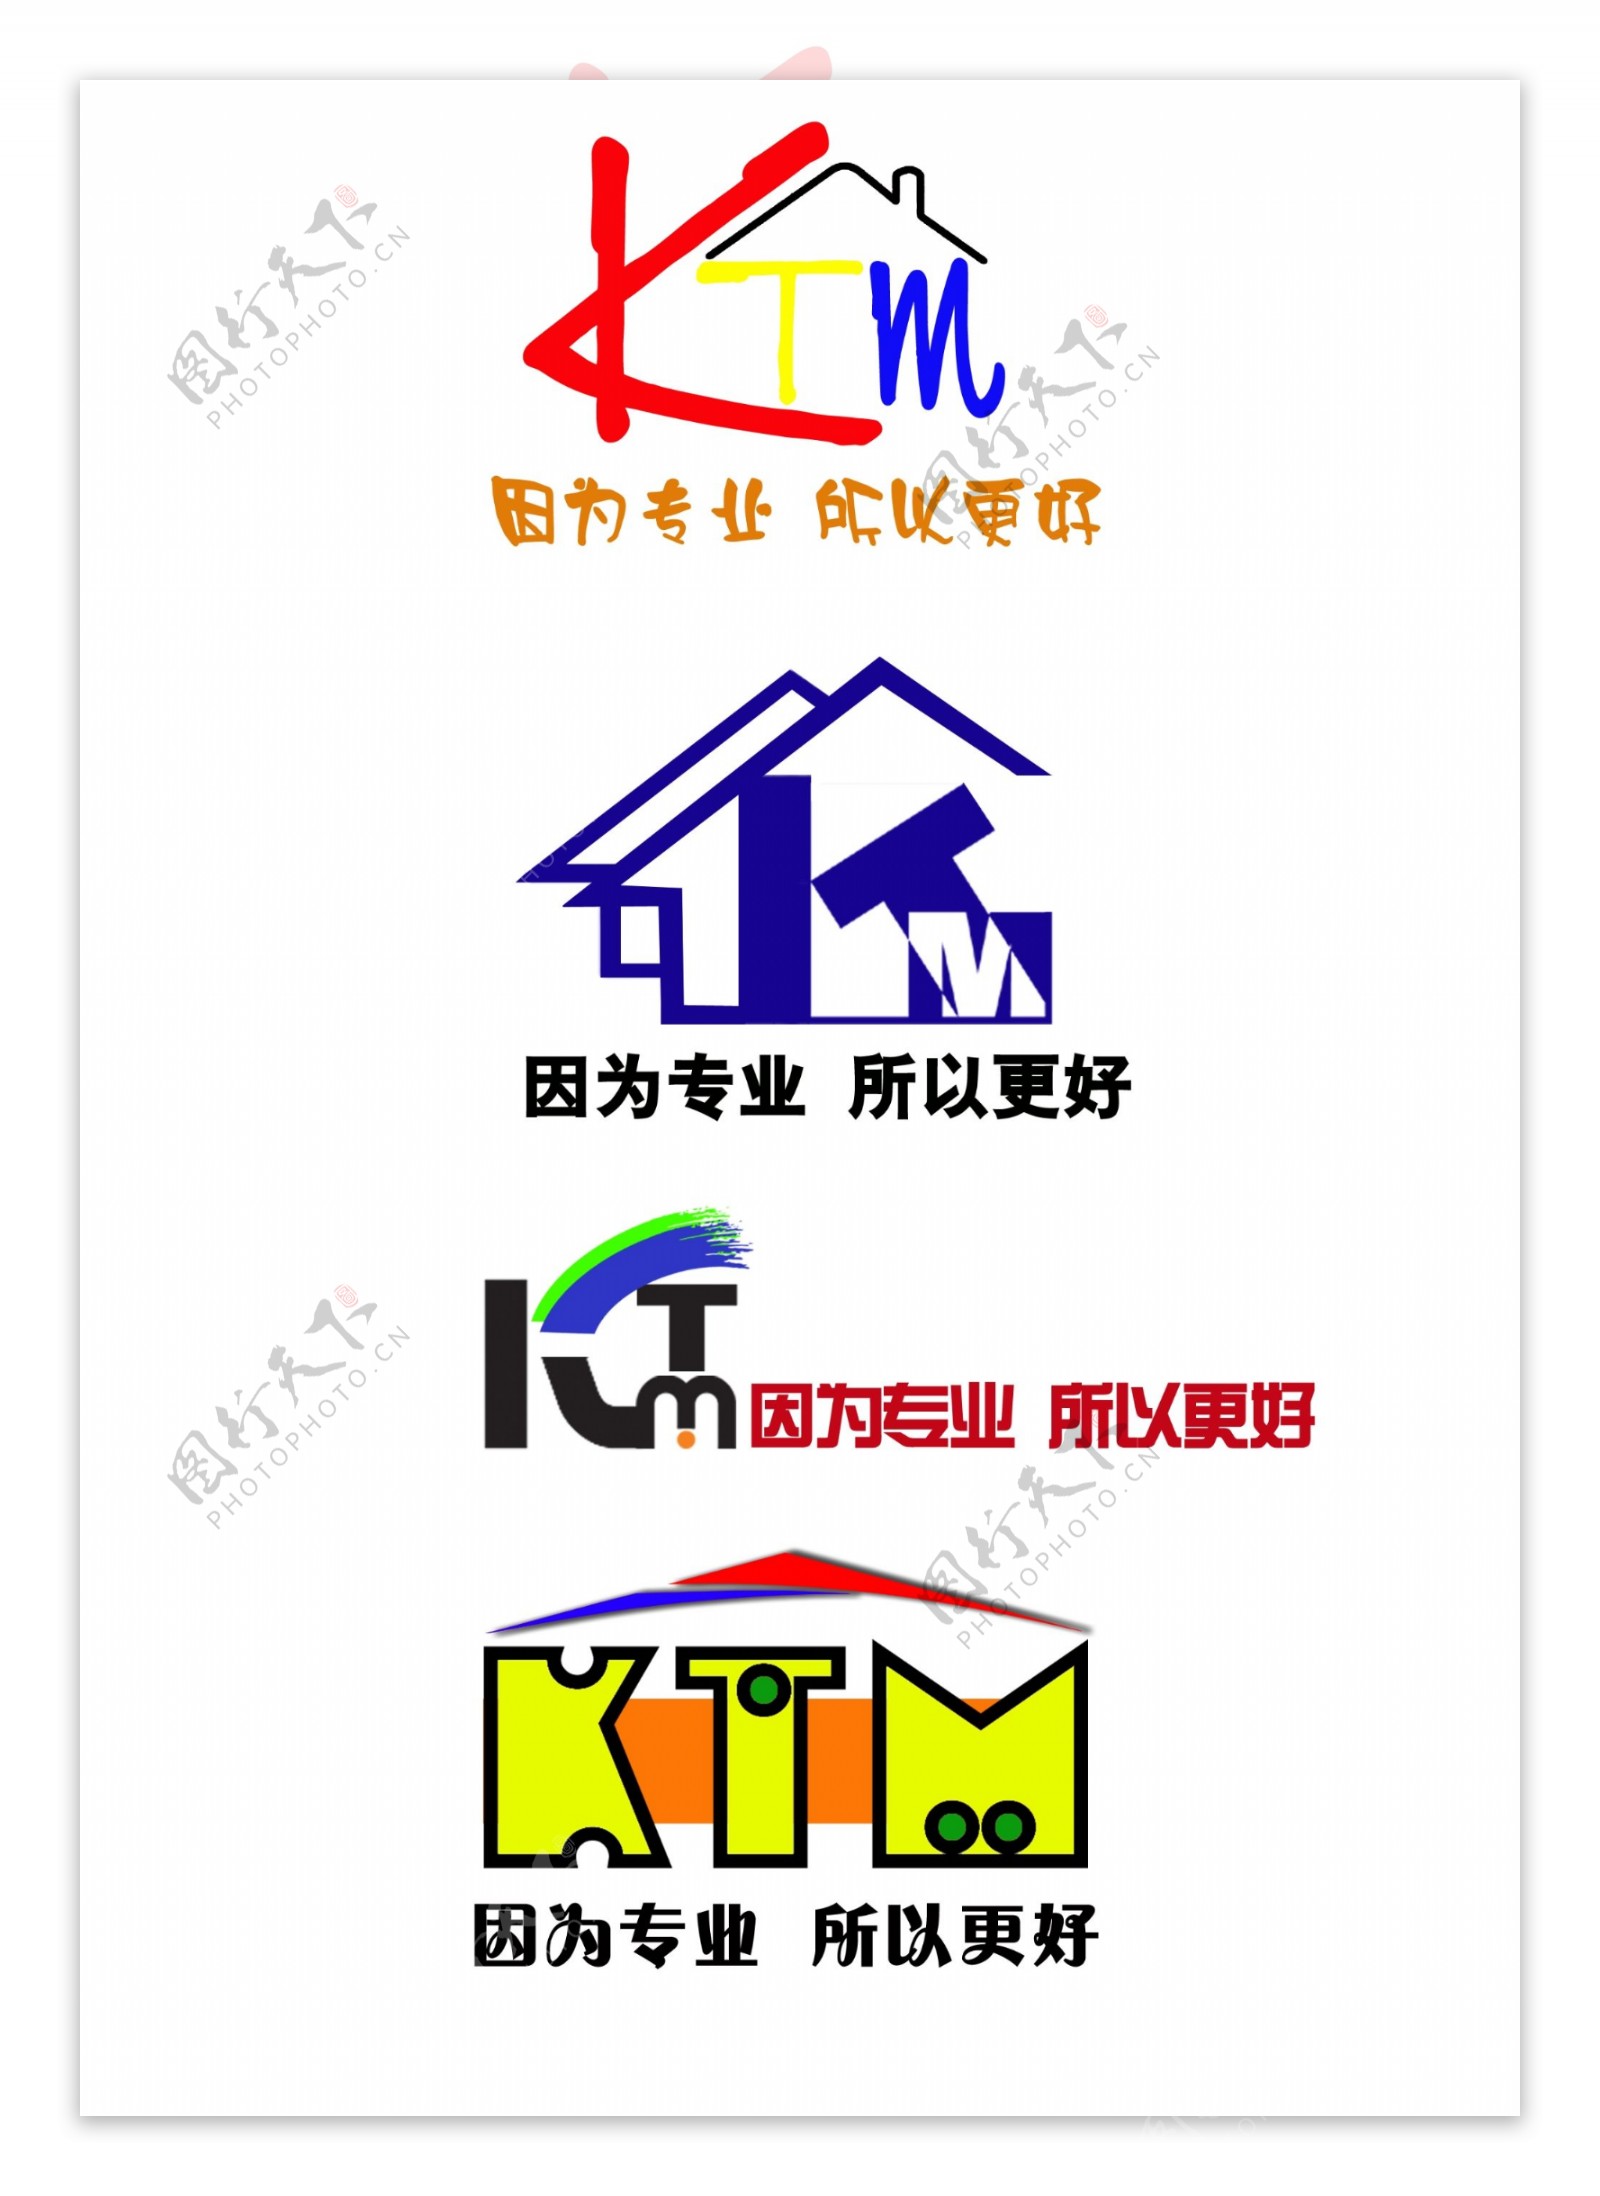 ktmk字开头的logo装修公司logo图片